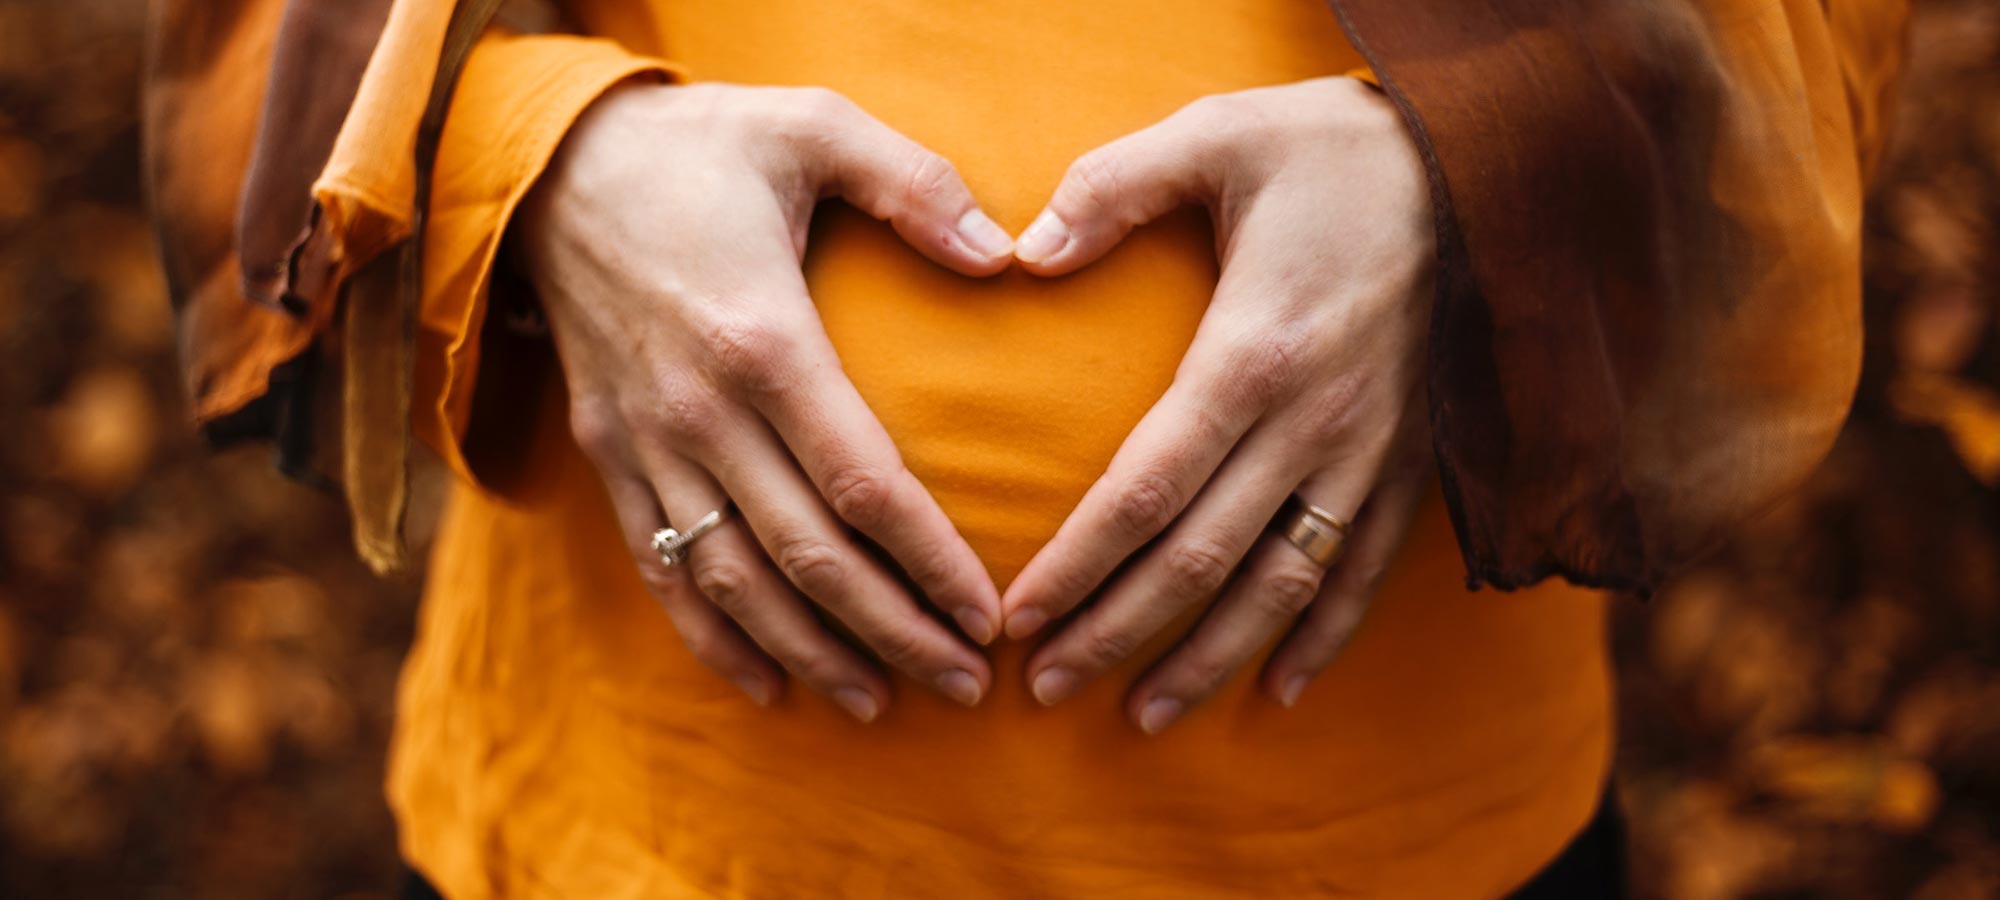 mani di donna su pancia formano un cuore incinta gravidanza